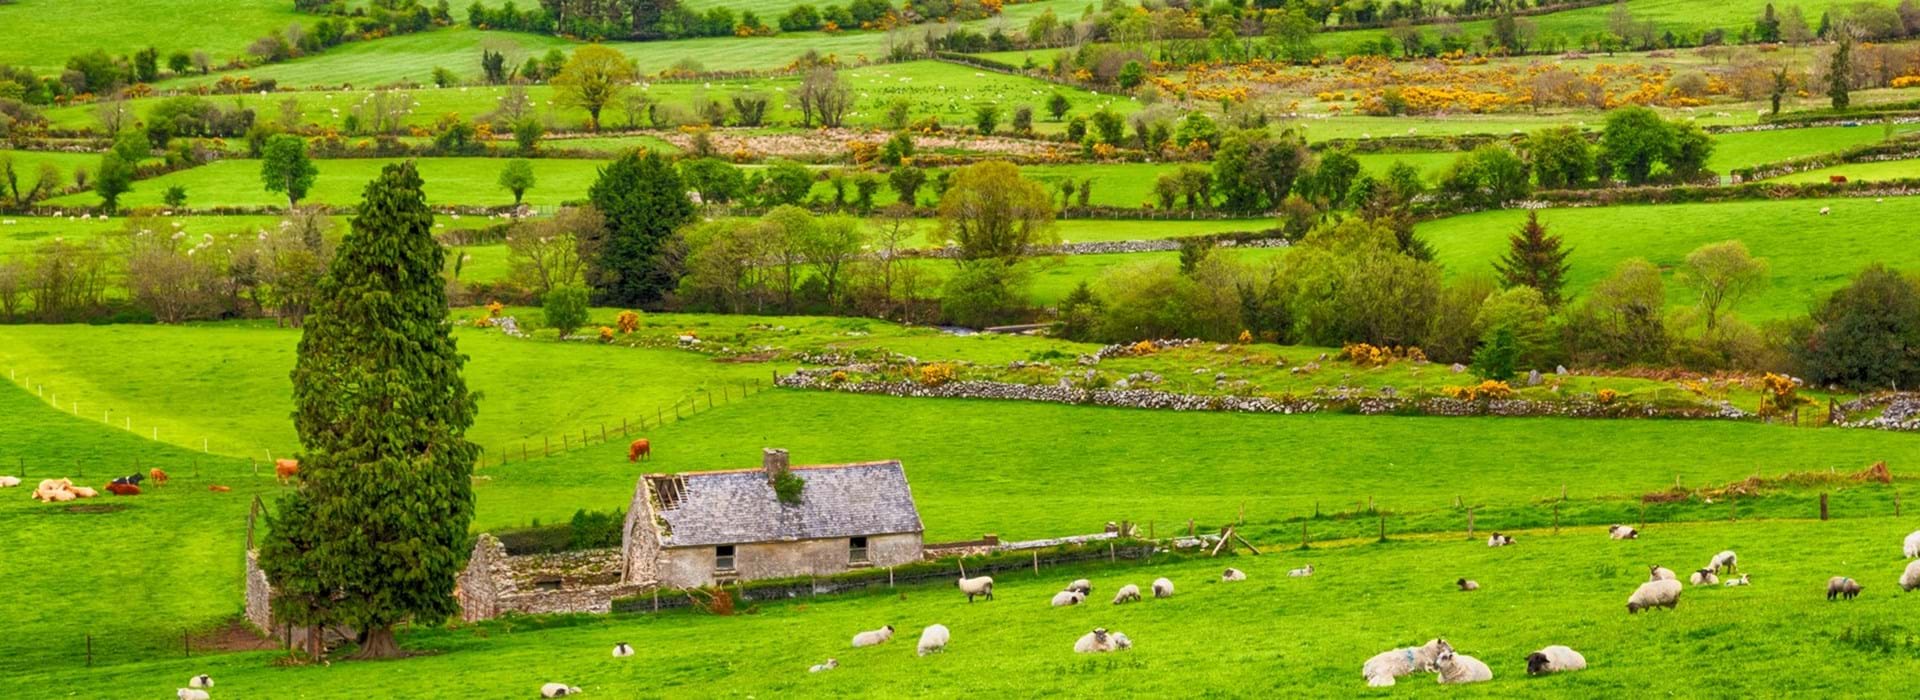 Ierland-header2_istock-ierland-donegal-landschap-groen